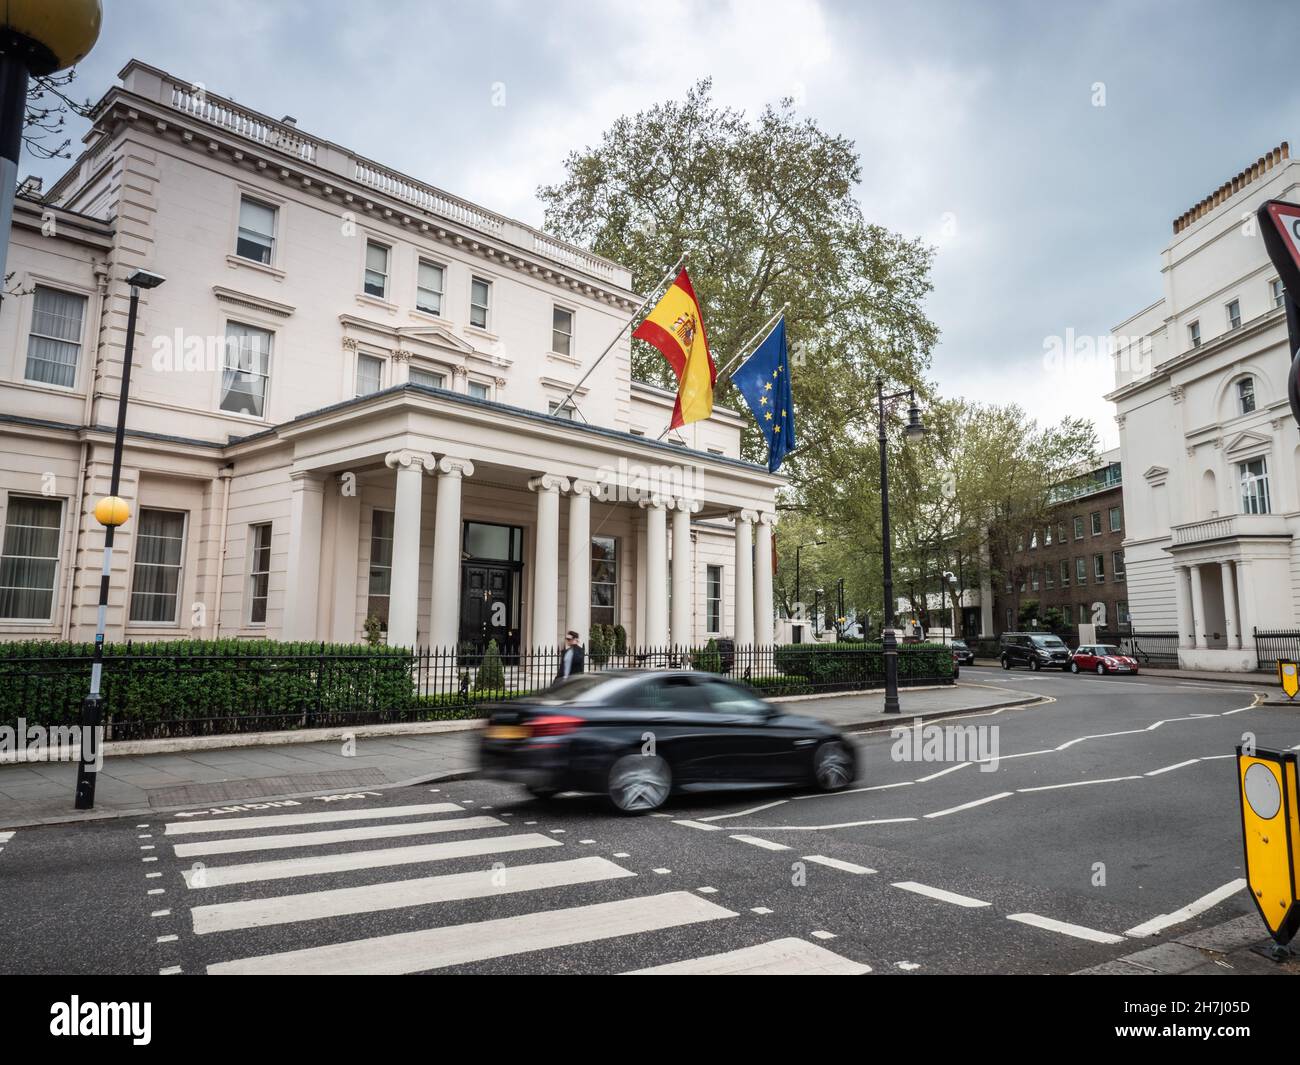 Botschaft von Spanien, London, Großbritannien. Die nationale und die EU-Flagge fliegen über dem Eingang zur spanischen Botschaft im Londoner Stadtteil Belgravia. Stockfoto